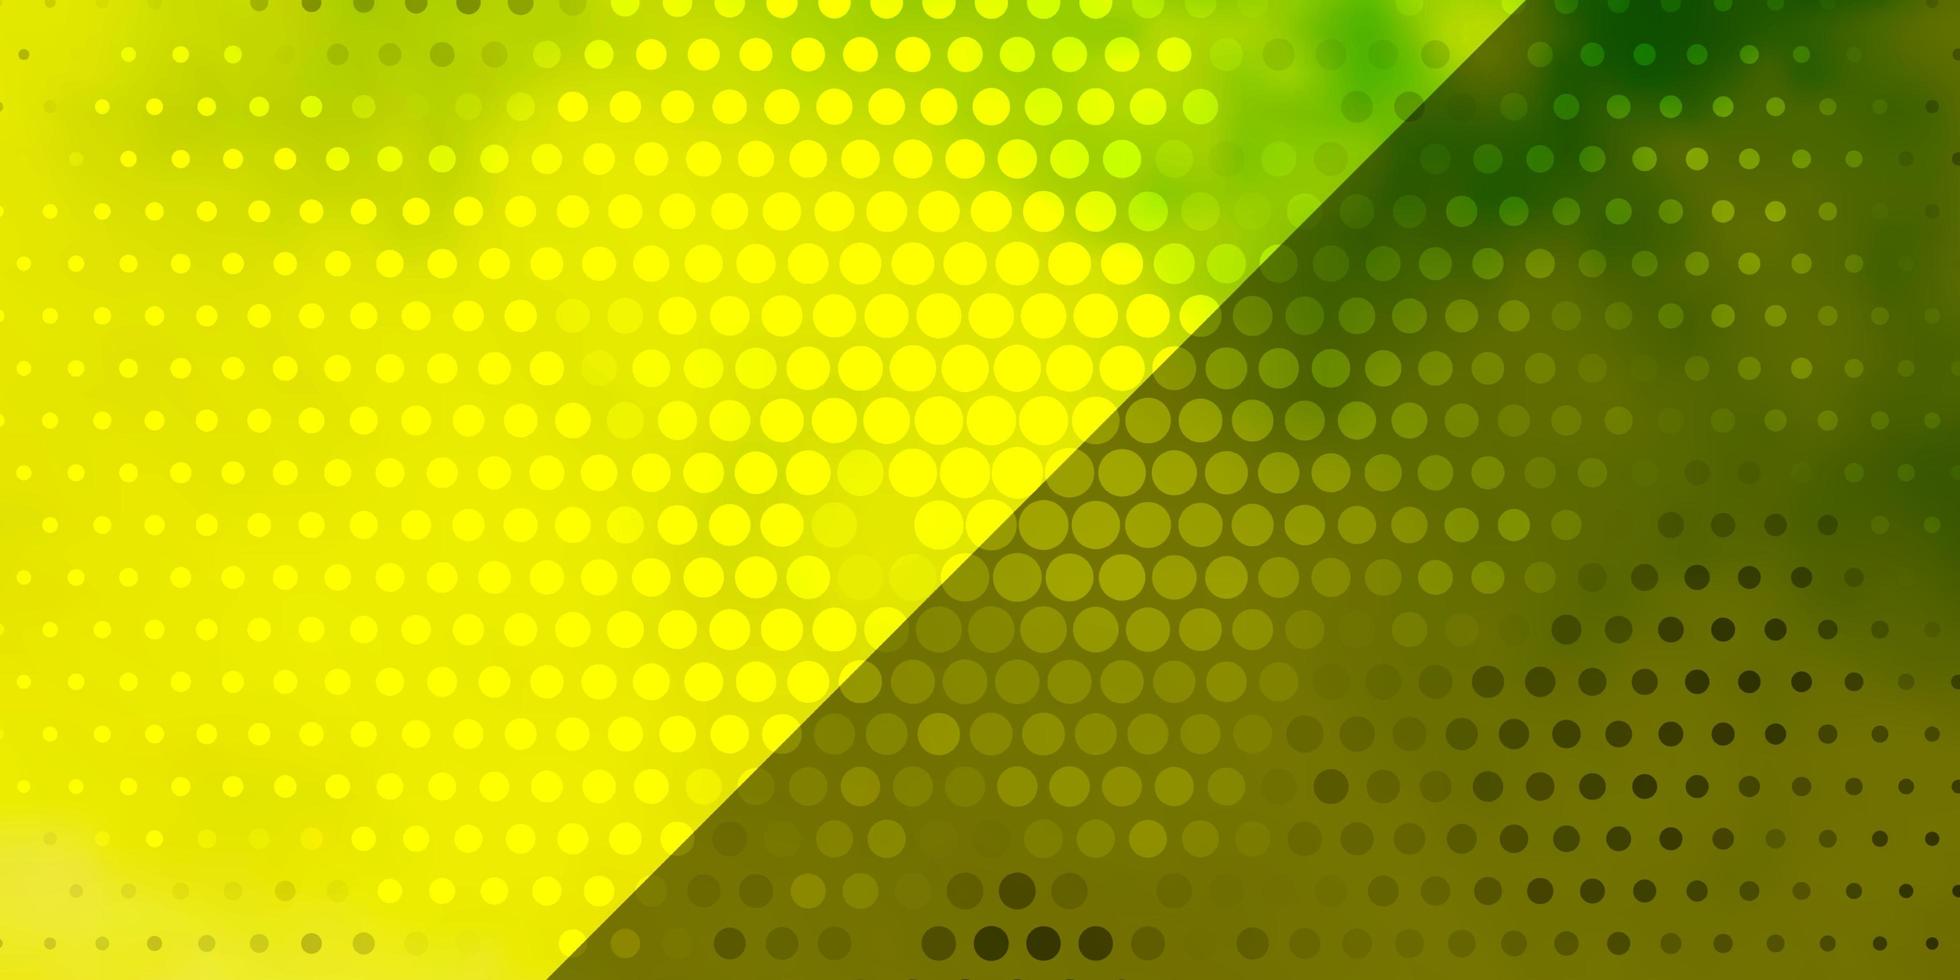 sfondo vettoriale verde chiaro, giallo con cerchi. dischi colorati astratti su sfondo sfumato semplice. nuovo modello per il tuo libro di marca.